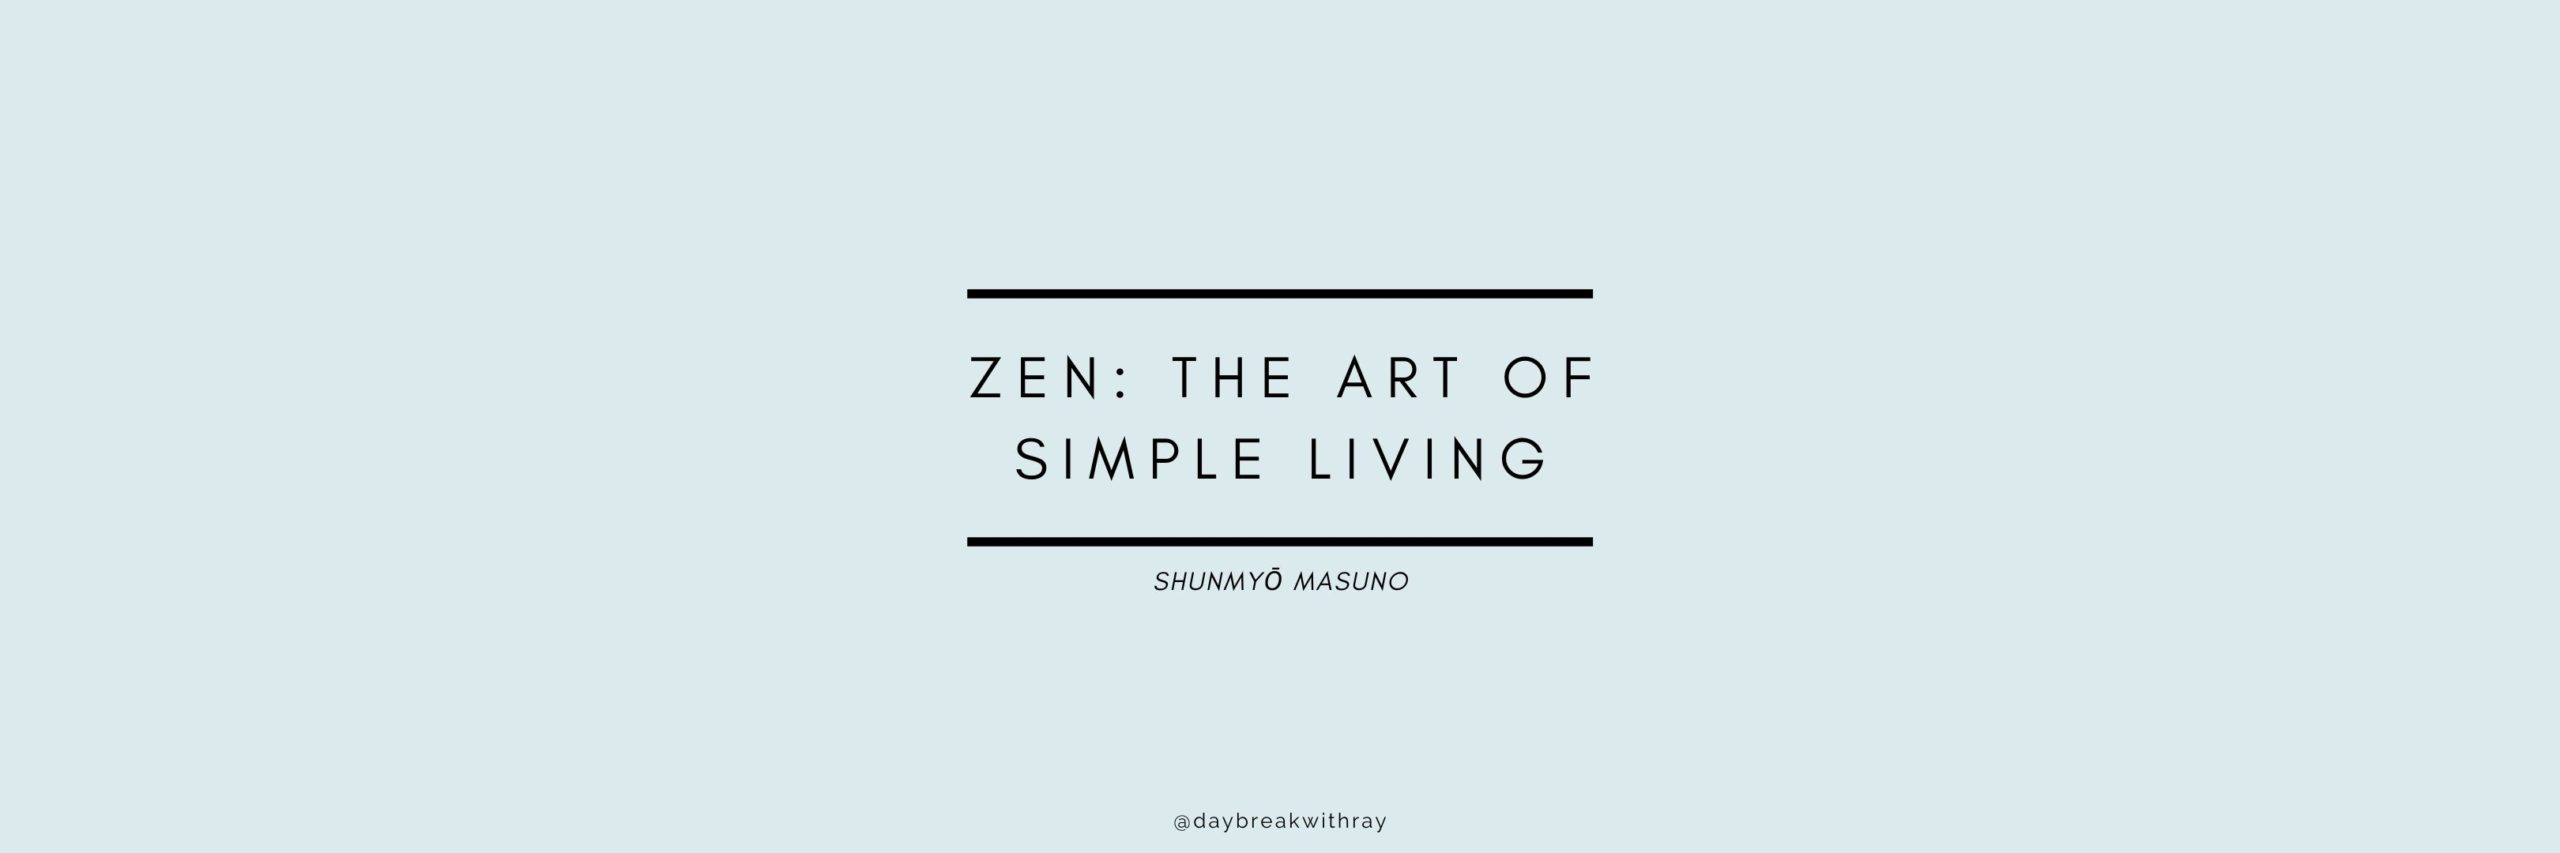 Zen The Art of Simple Living